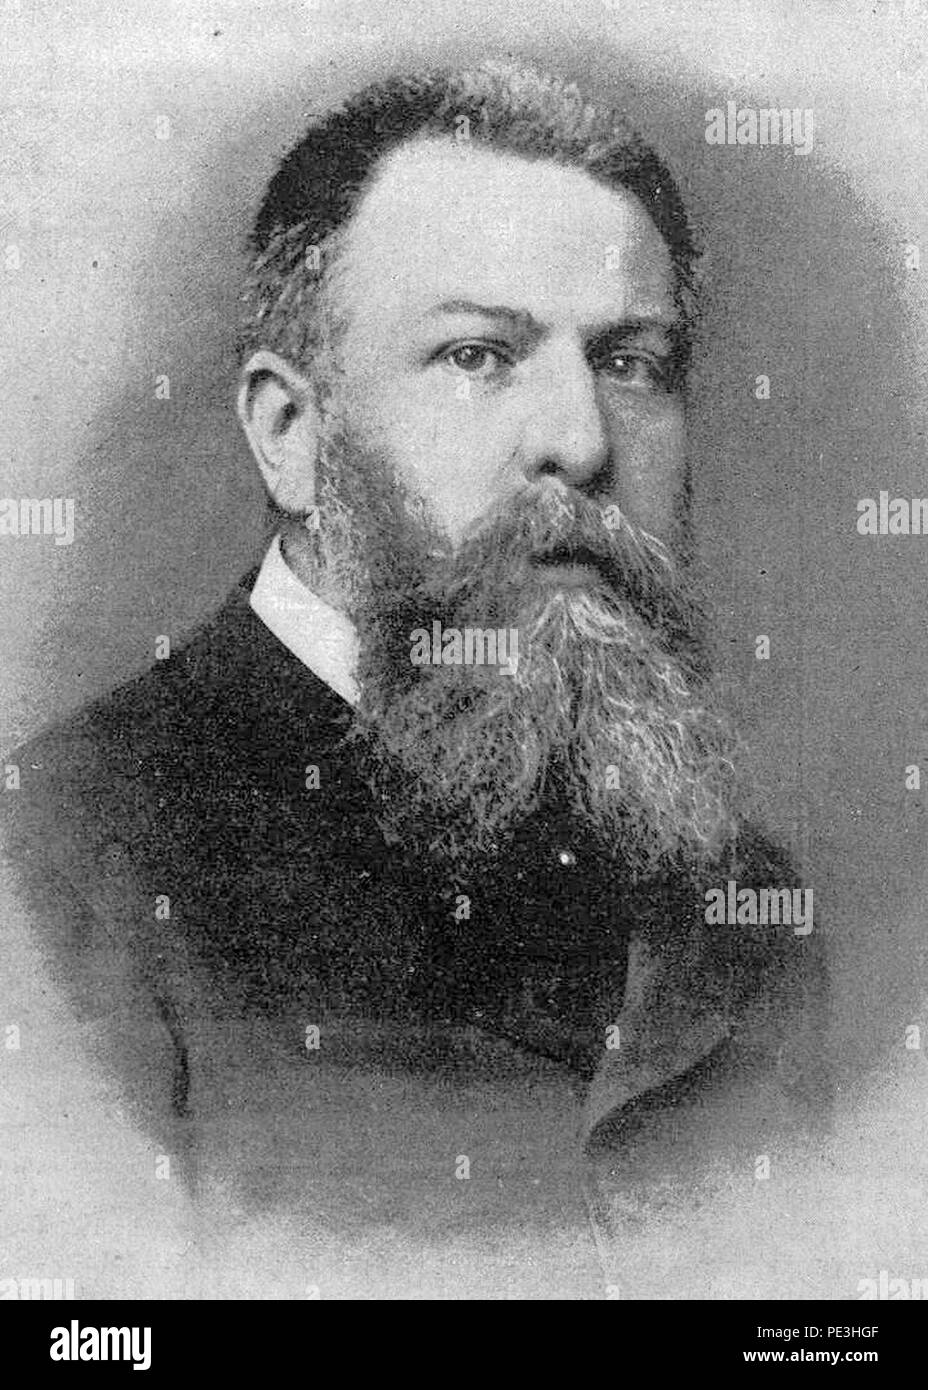 Antonio Starabba di Rudinì 1891. Stock Photo